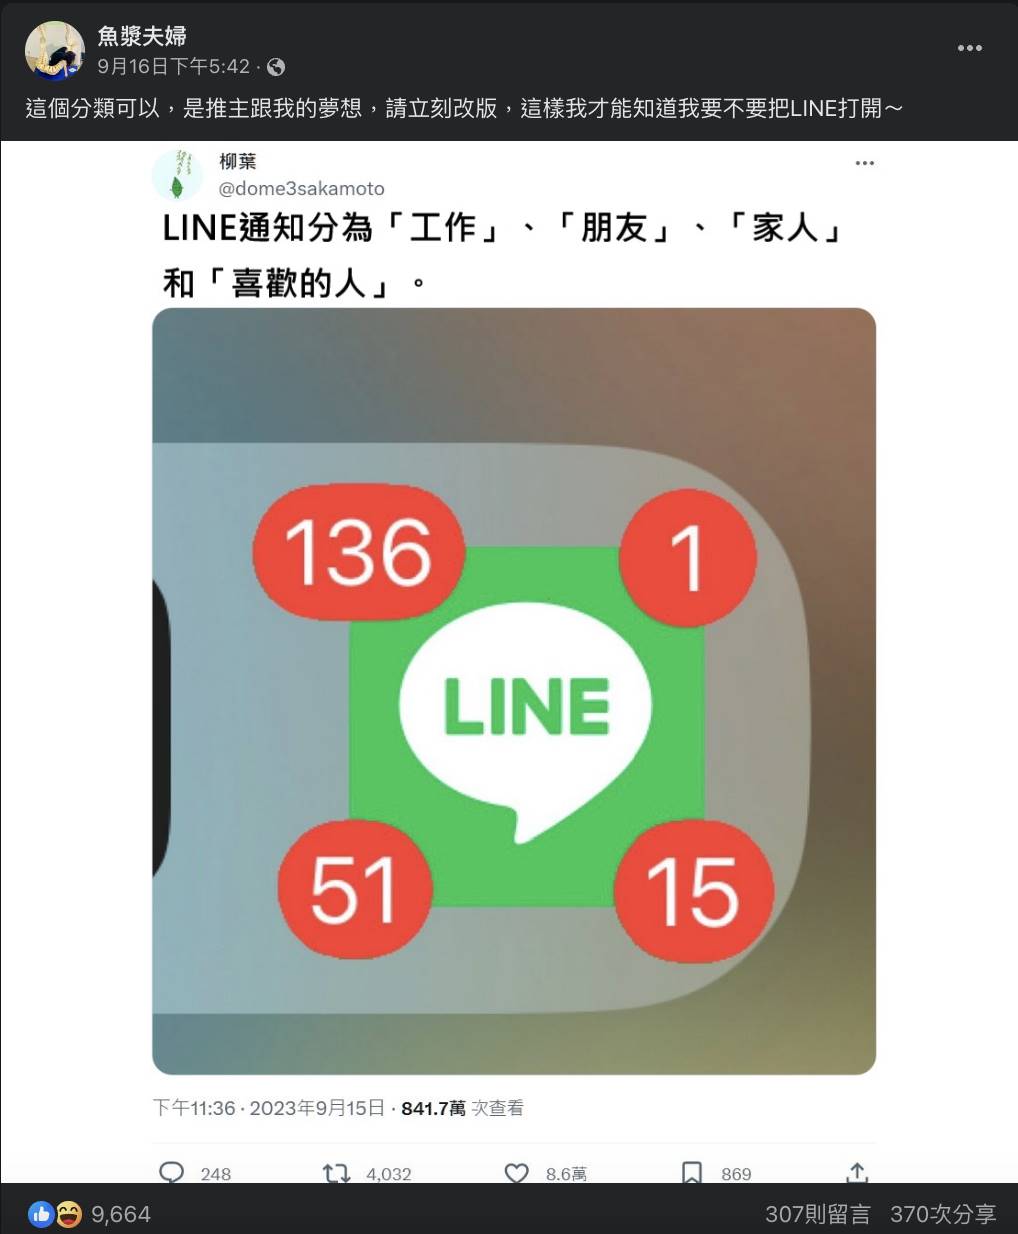 LINE是台灣人最普遍使用的主要通訊軟體，除了社交聯繫方面相當實用之外，還有眾多可愛、逗趣的貼圖吸引大家目光。不過由於親朋好友、工作群組大多使用LINE聯絡，越來越多商家品牌也開始用LINE推送優惠內容，導致訊息量爆炸讓不少網友感到困擾，敲碗LINE官方能夠推出1項「未讀訊息分類」的新功能。